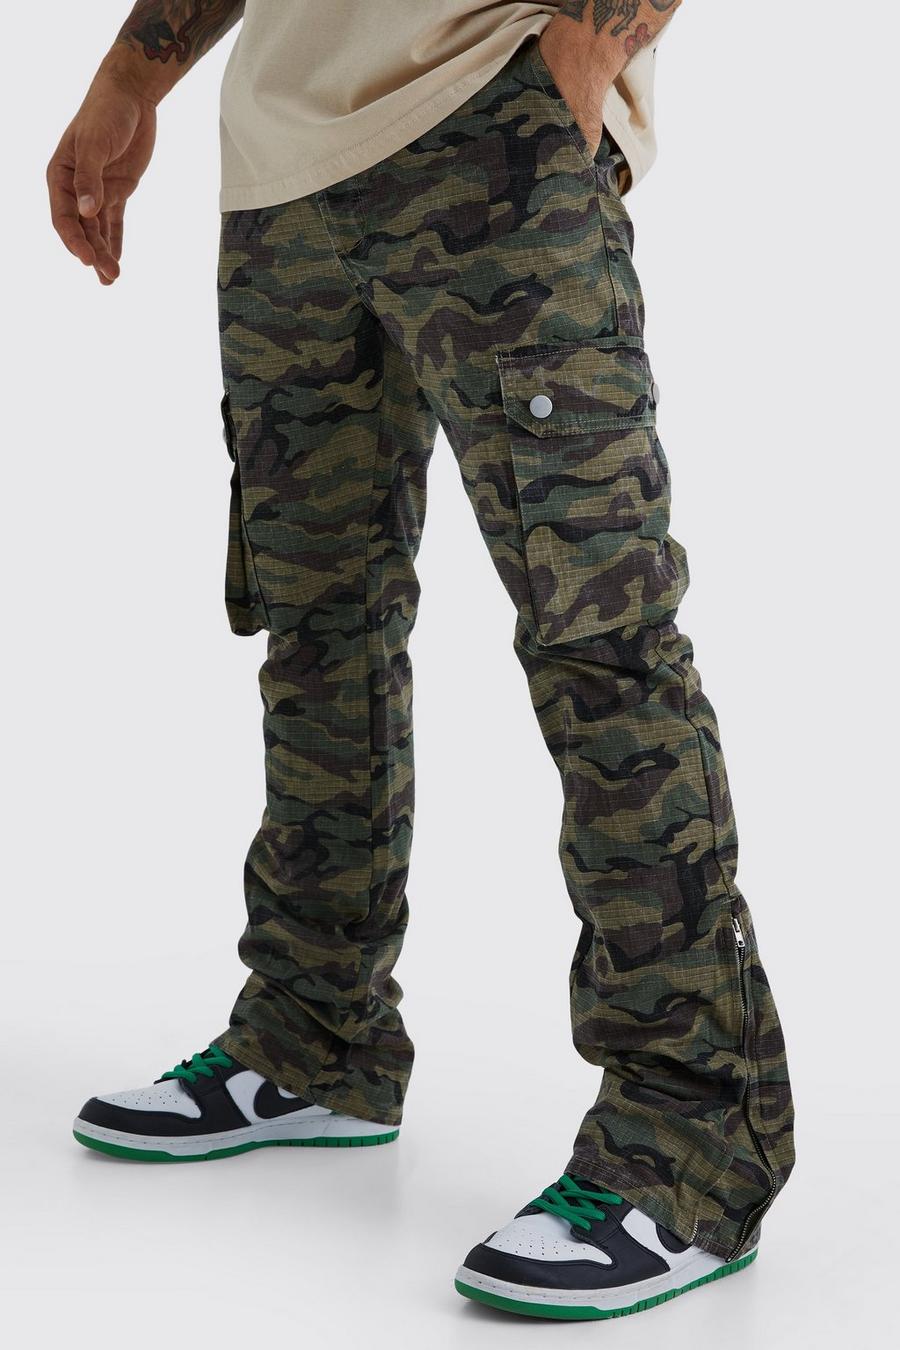 Pantaloni Cargo Slim Fit in nylon ripstop in fantasia militare con inserti, zip e pieghe sul fondo, Khaki image number 1